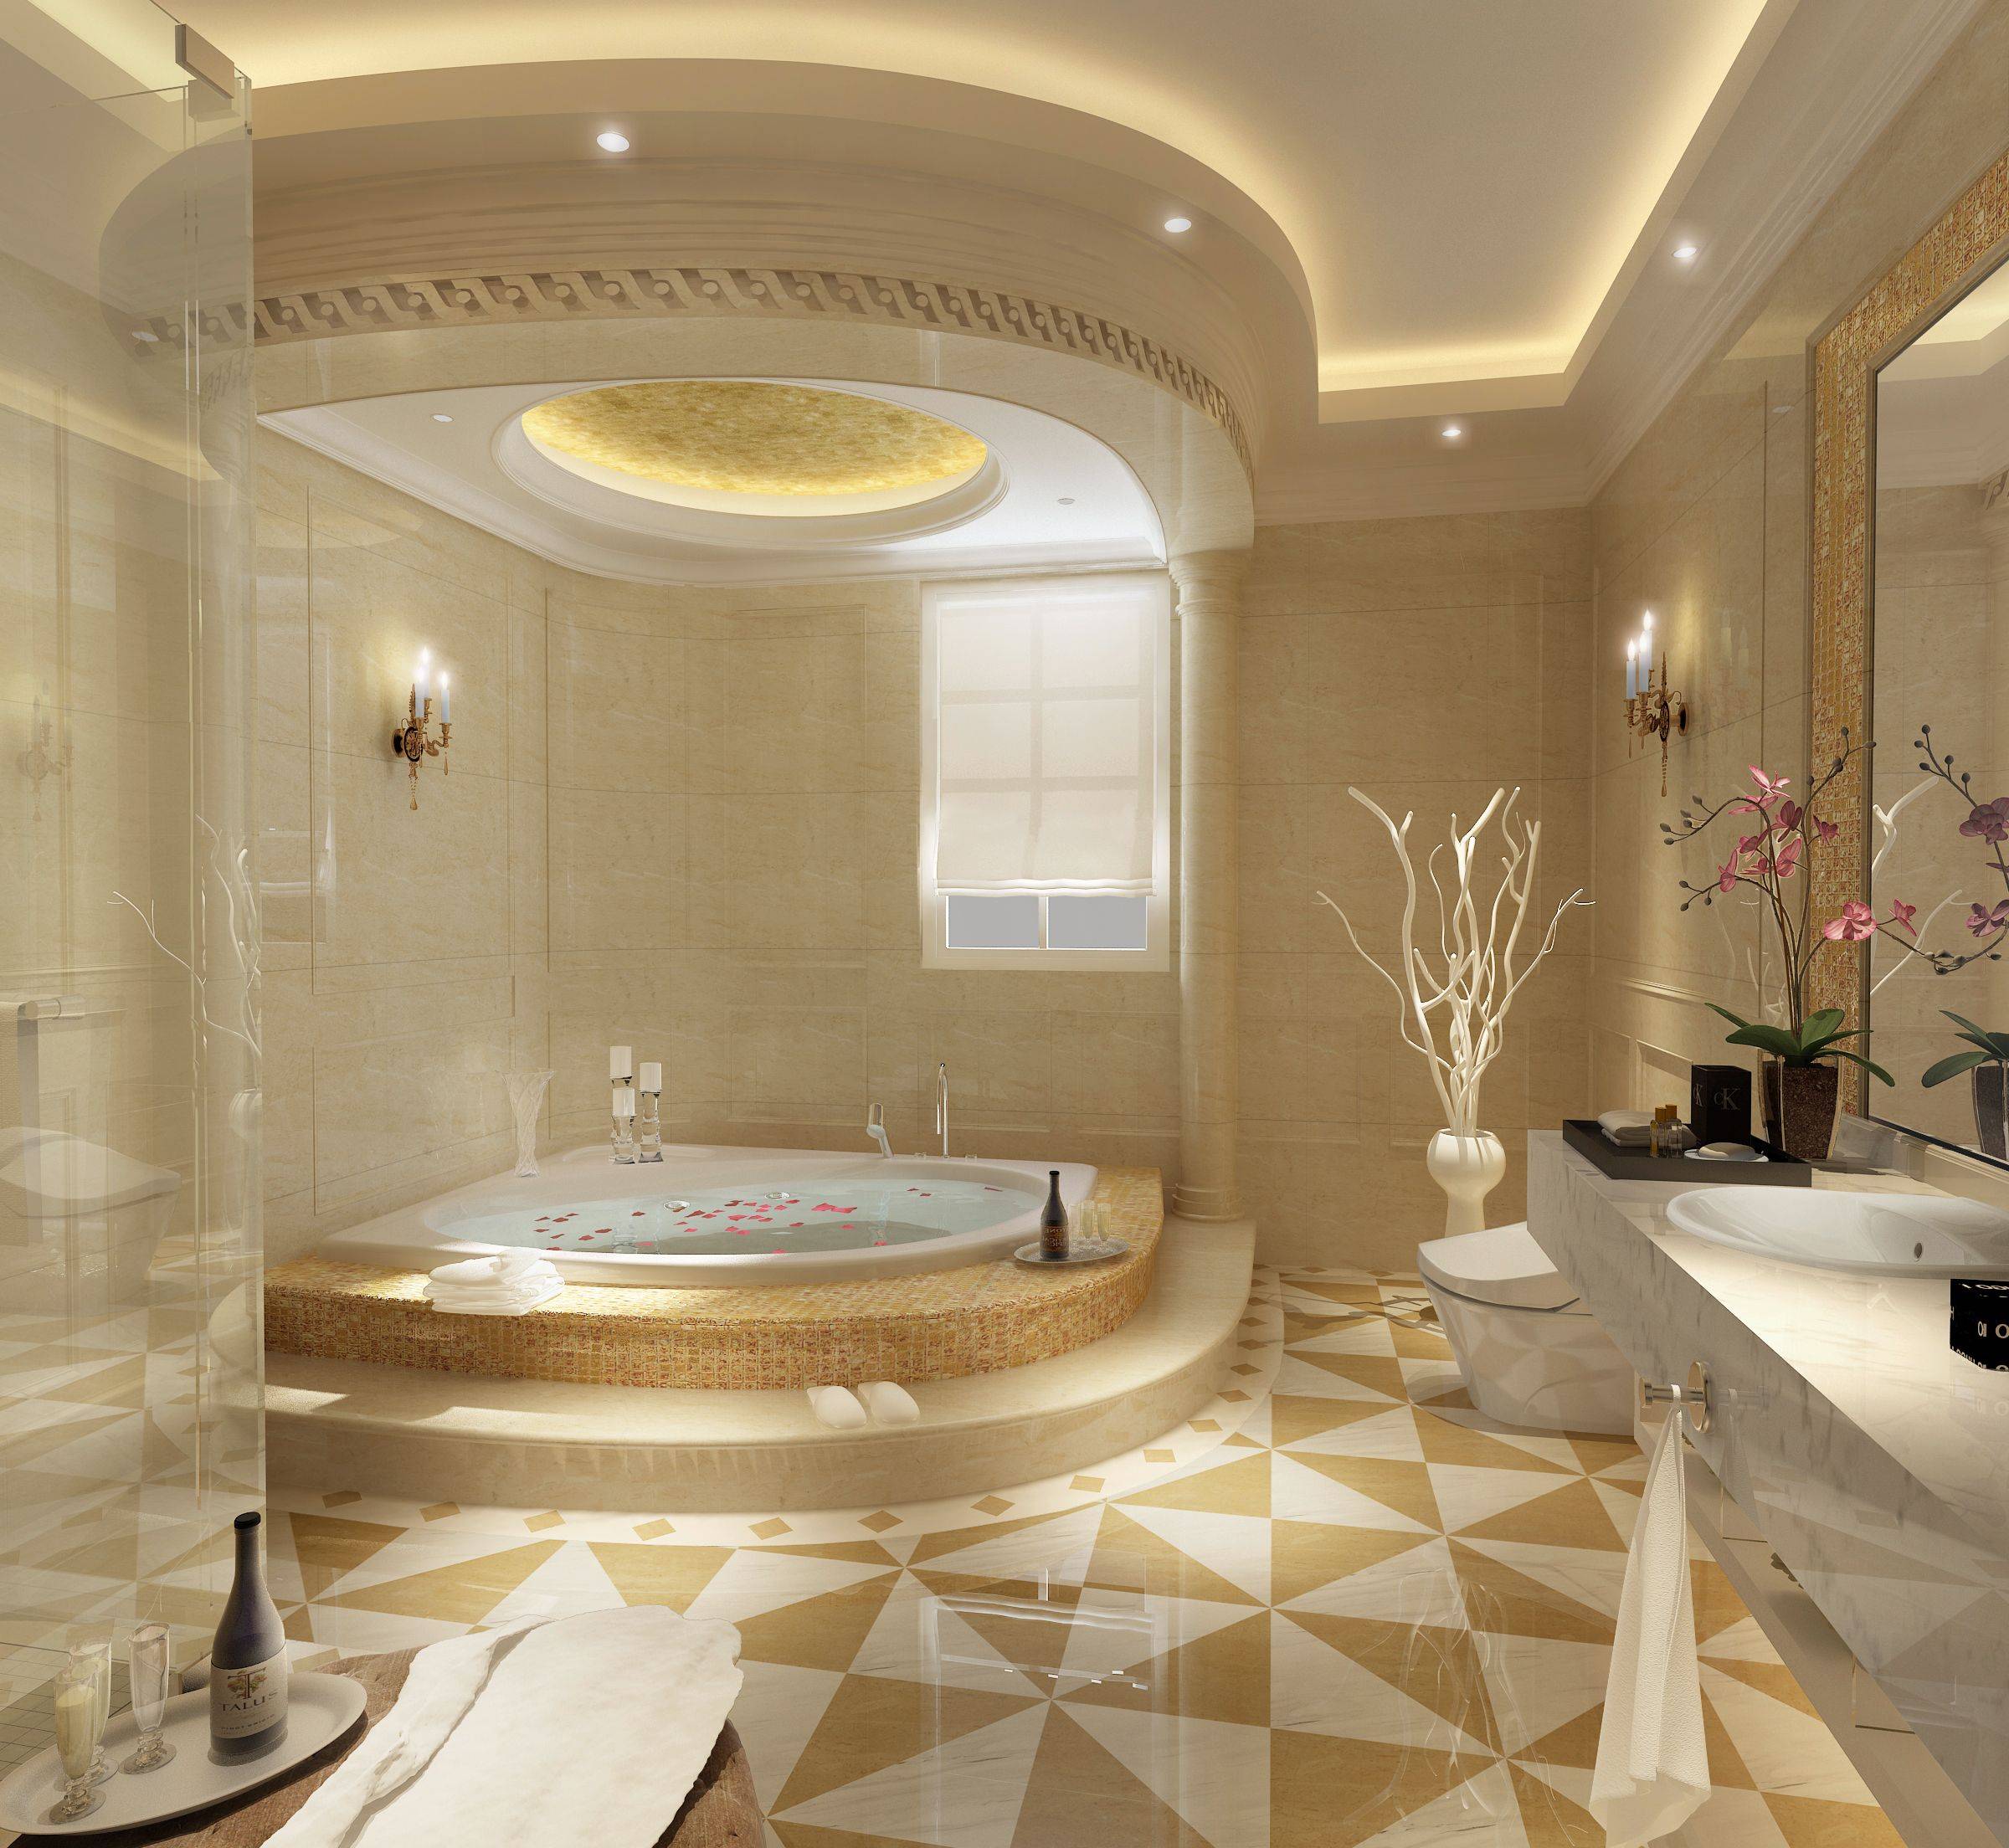 Дизайн потолка в ванной комнате - какой дизайн выбрать (+ фото) - vannayasvoimirukami.ru